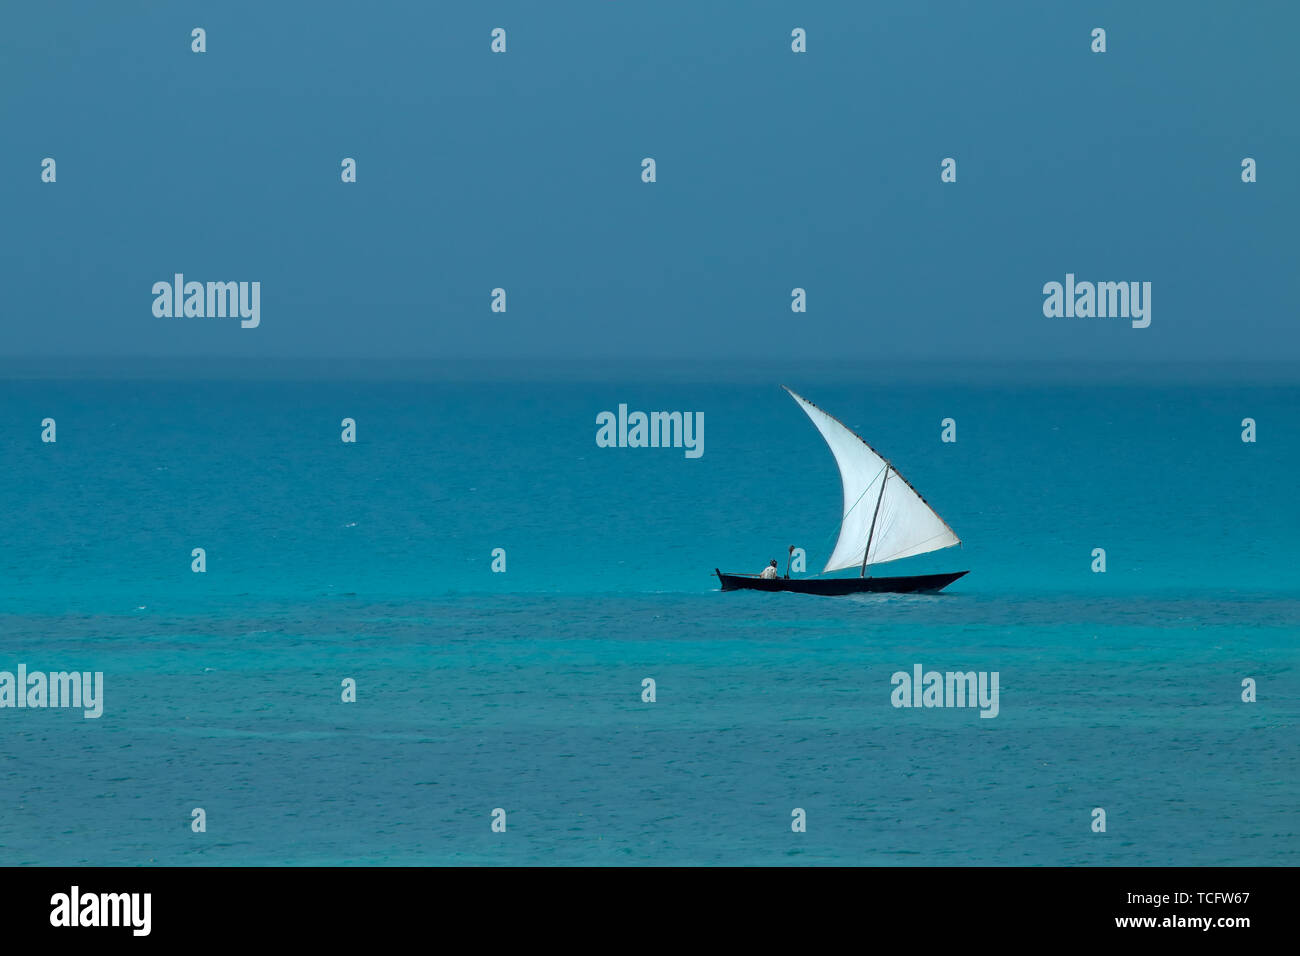 Imbarcazione a vela in legno (dhow) sull'acqua con cielo nuvoloso, isola di Zanzibar Foto Stock